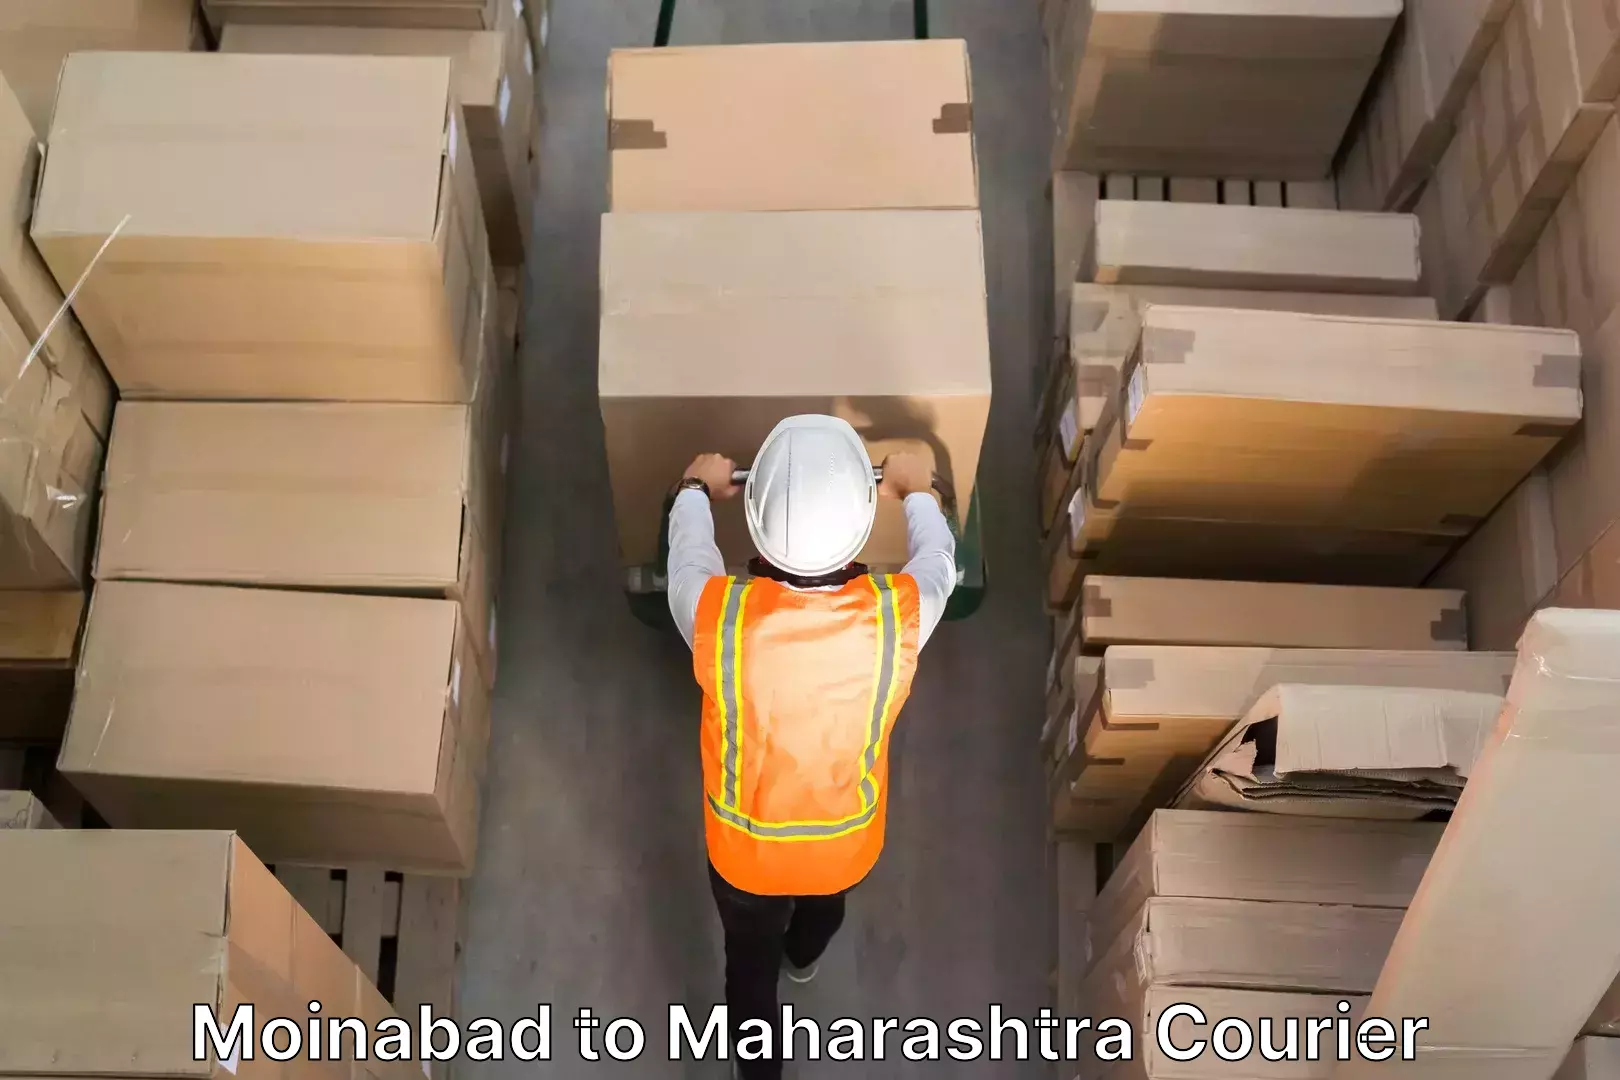 Trusted moving company Moinabad to Maharashtra